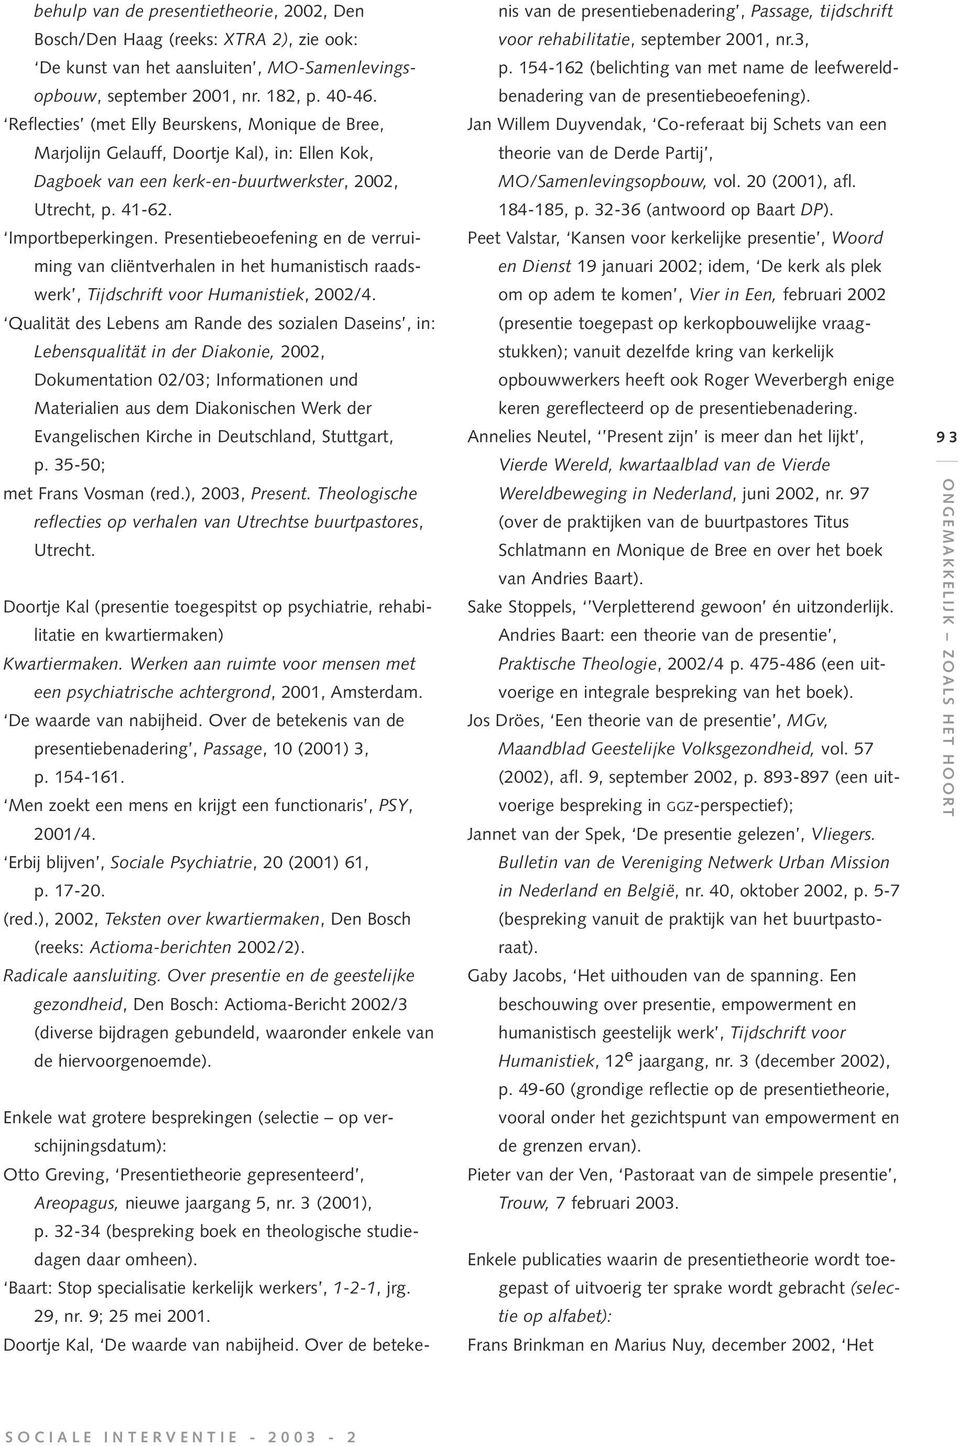 Presentiebeoefening en de verruiming van cliëntverhalen in het humanistisch raadswerk, Tijdschrift voor Humanistiek, 2002/4.